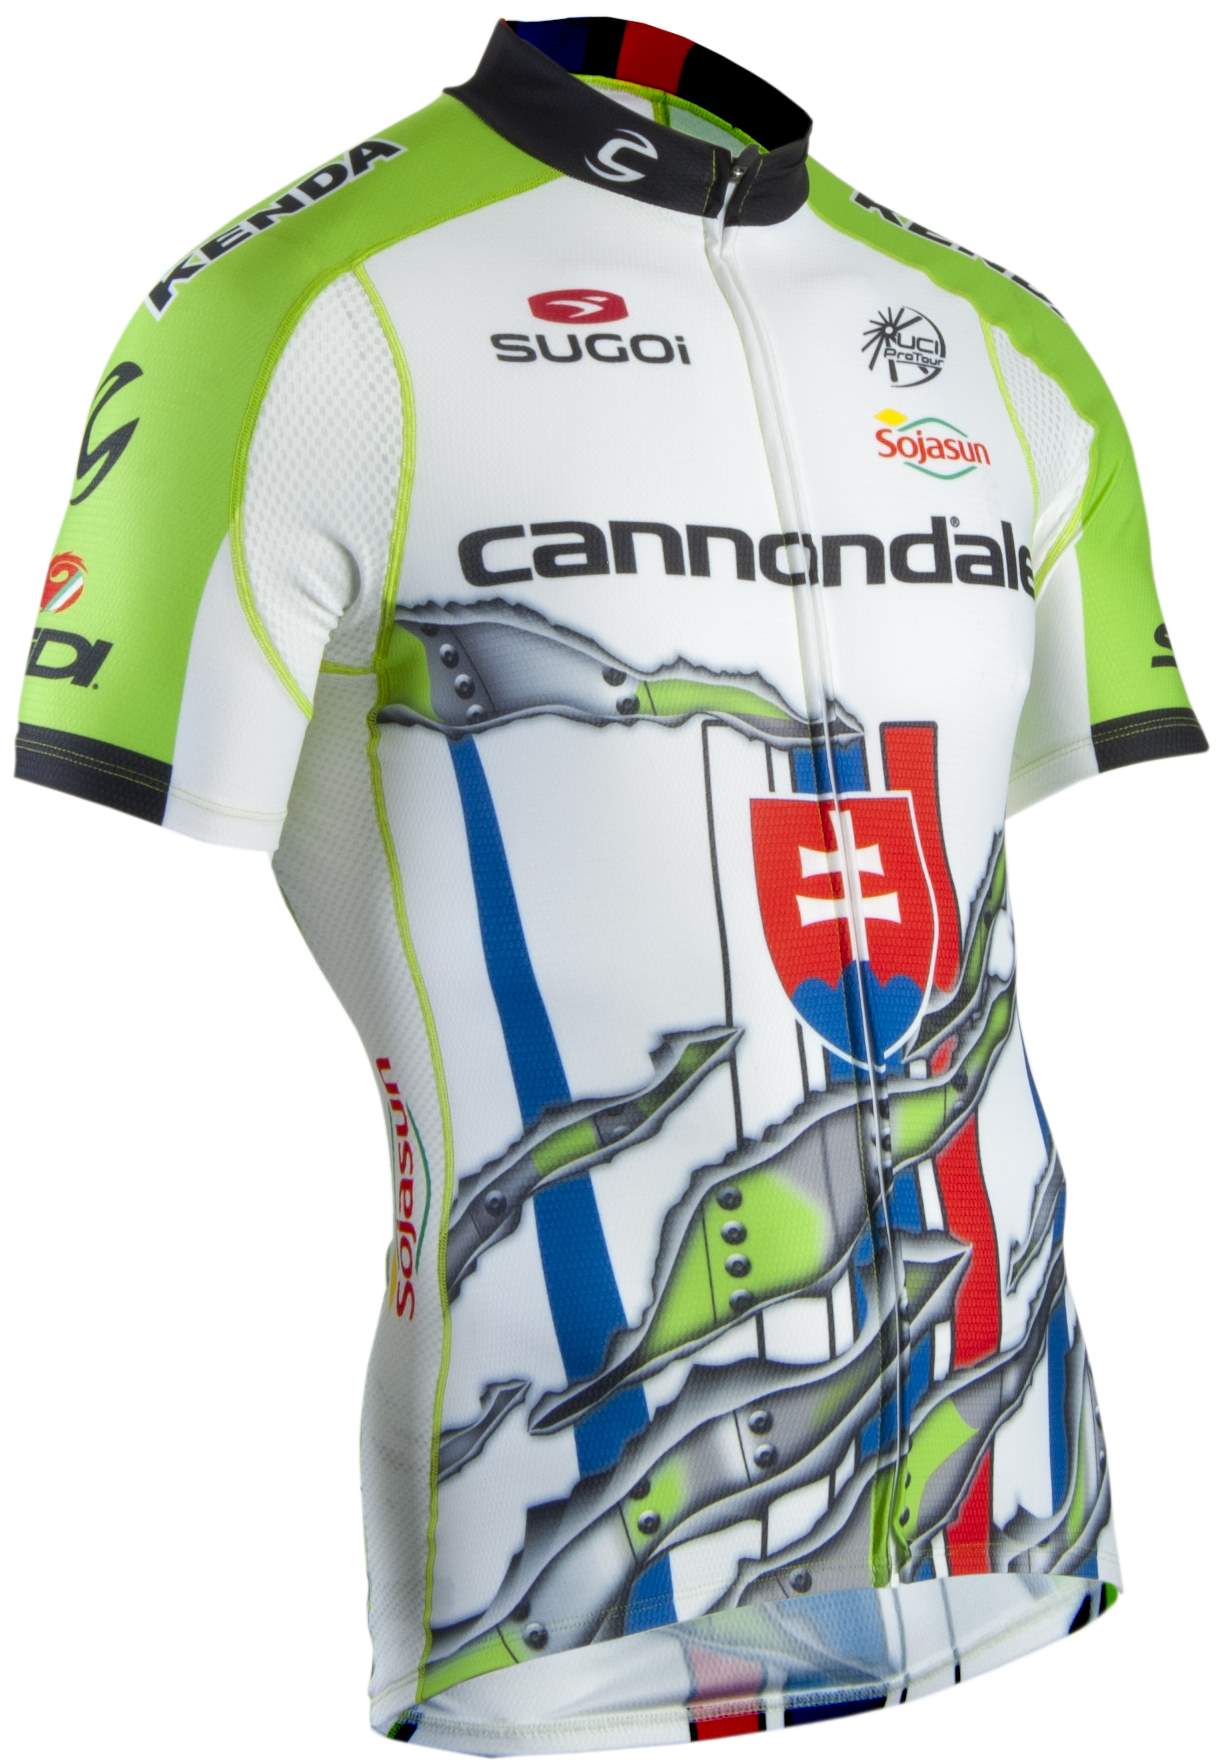 Peter Sagan's new custom jersey-front